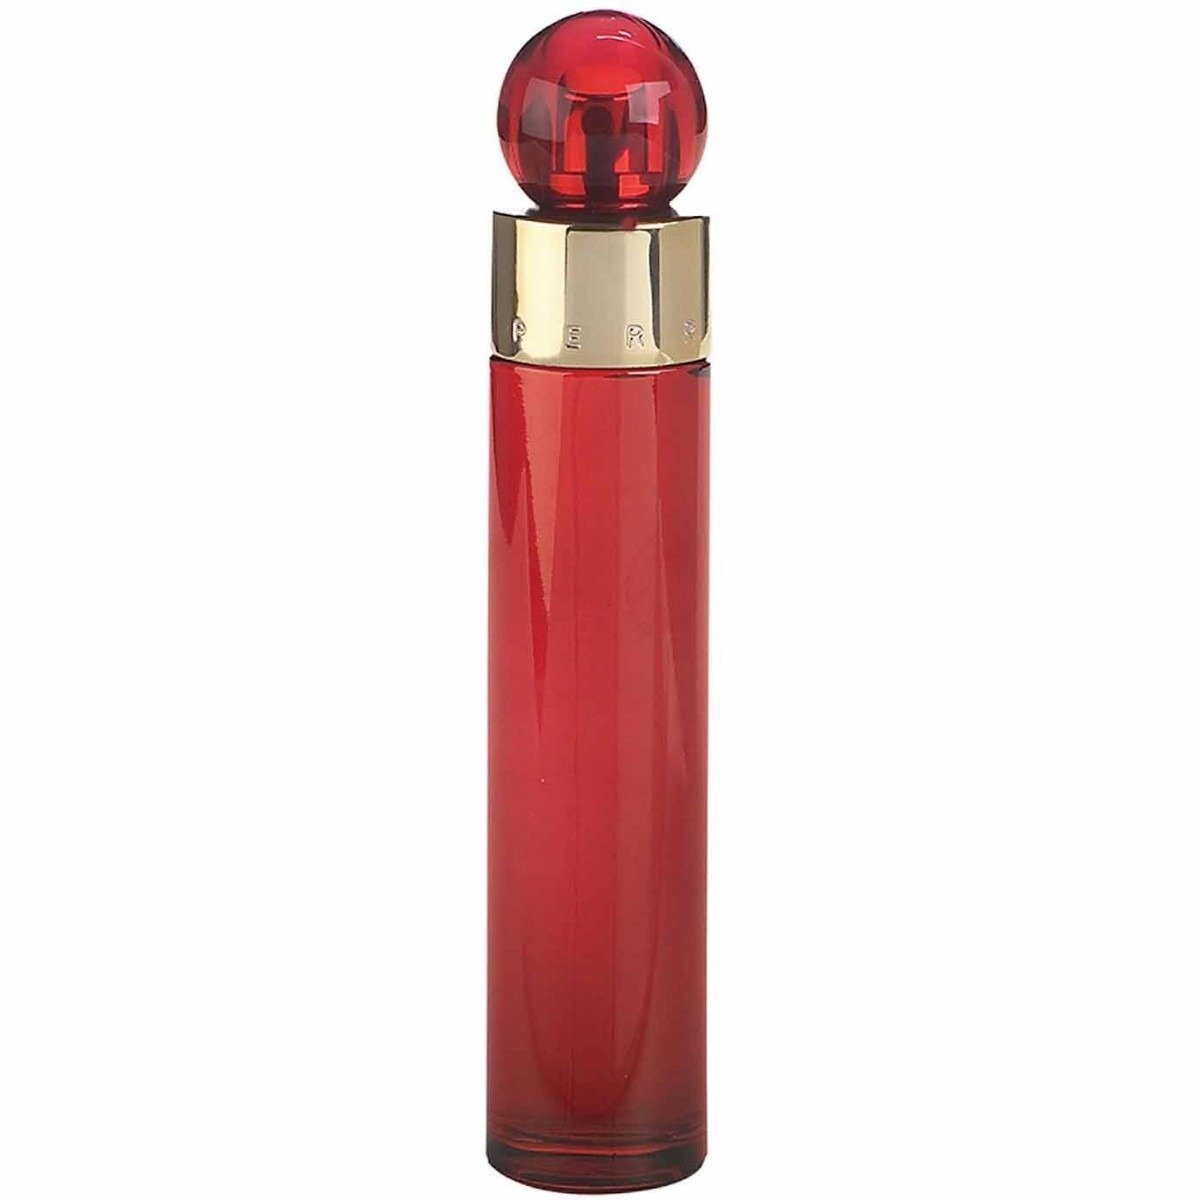 Perfume 360° Red Mujer De Perry Ellis Edp 100ml Original